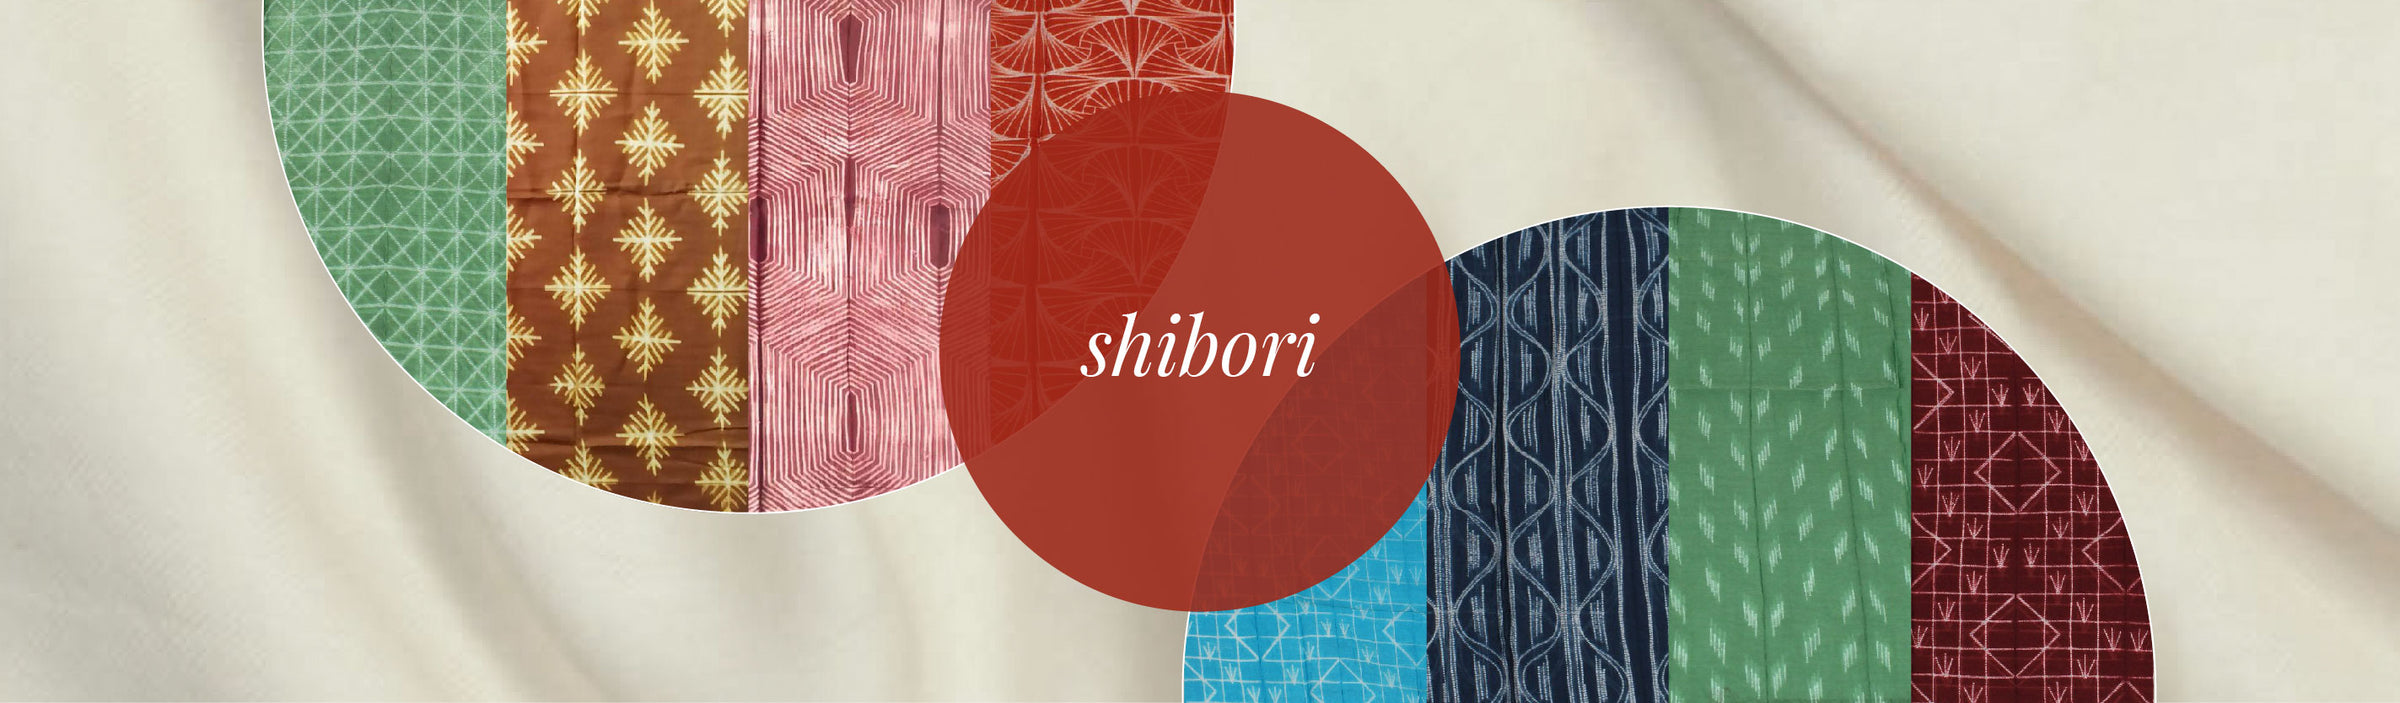 Shibori fabrics